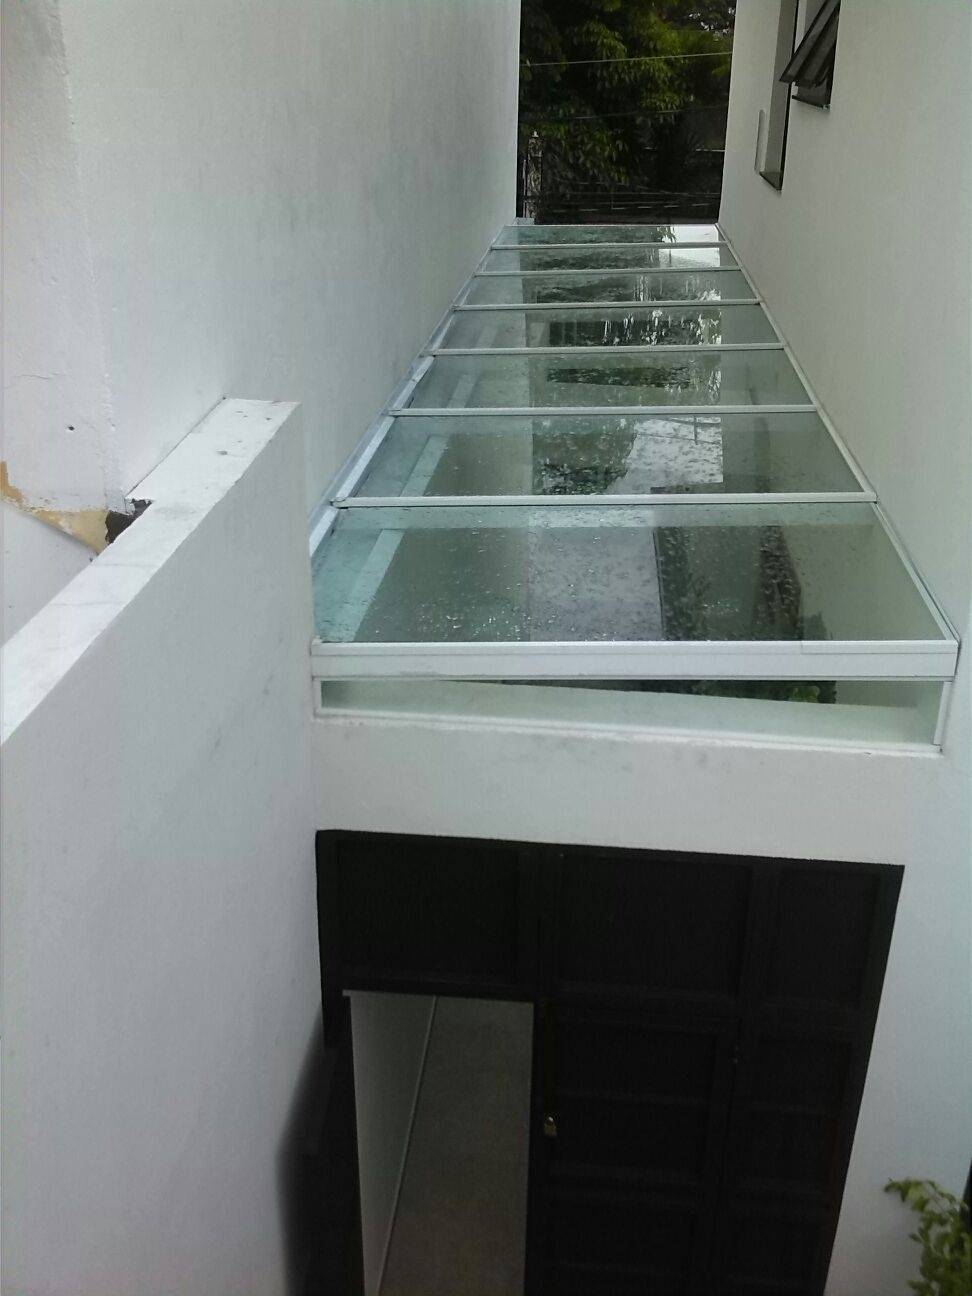 Quanto Custa o M2 de uma Cobertura de Vidro em São Miguel Paulista - Cobertura de Vidro em São Mateus